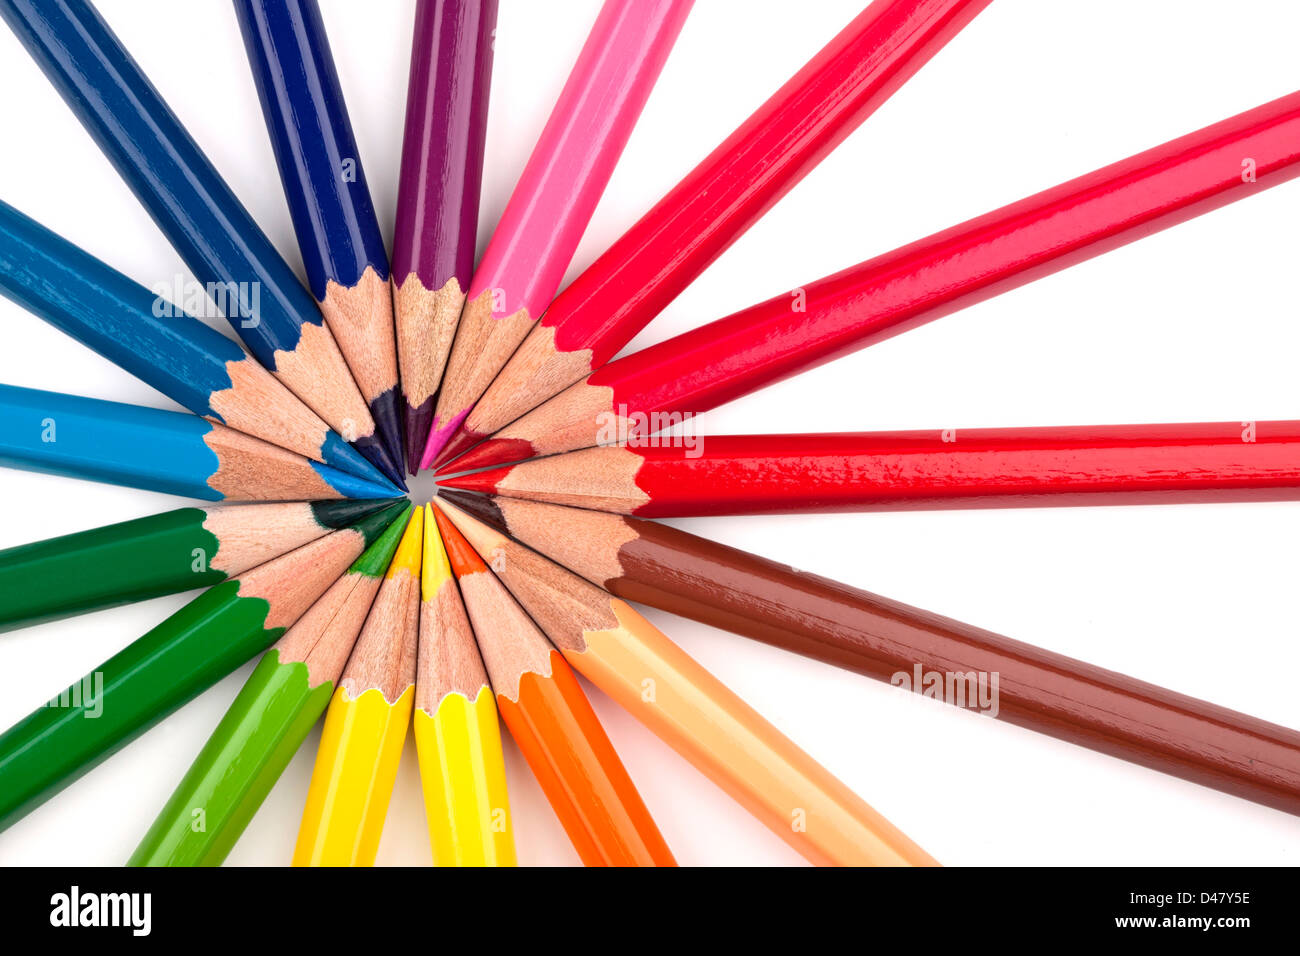 Crayons de couleur différente dans une formation. Banque D'Images